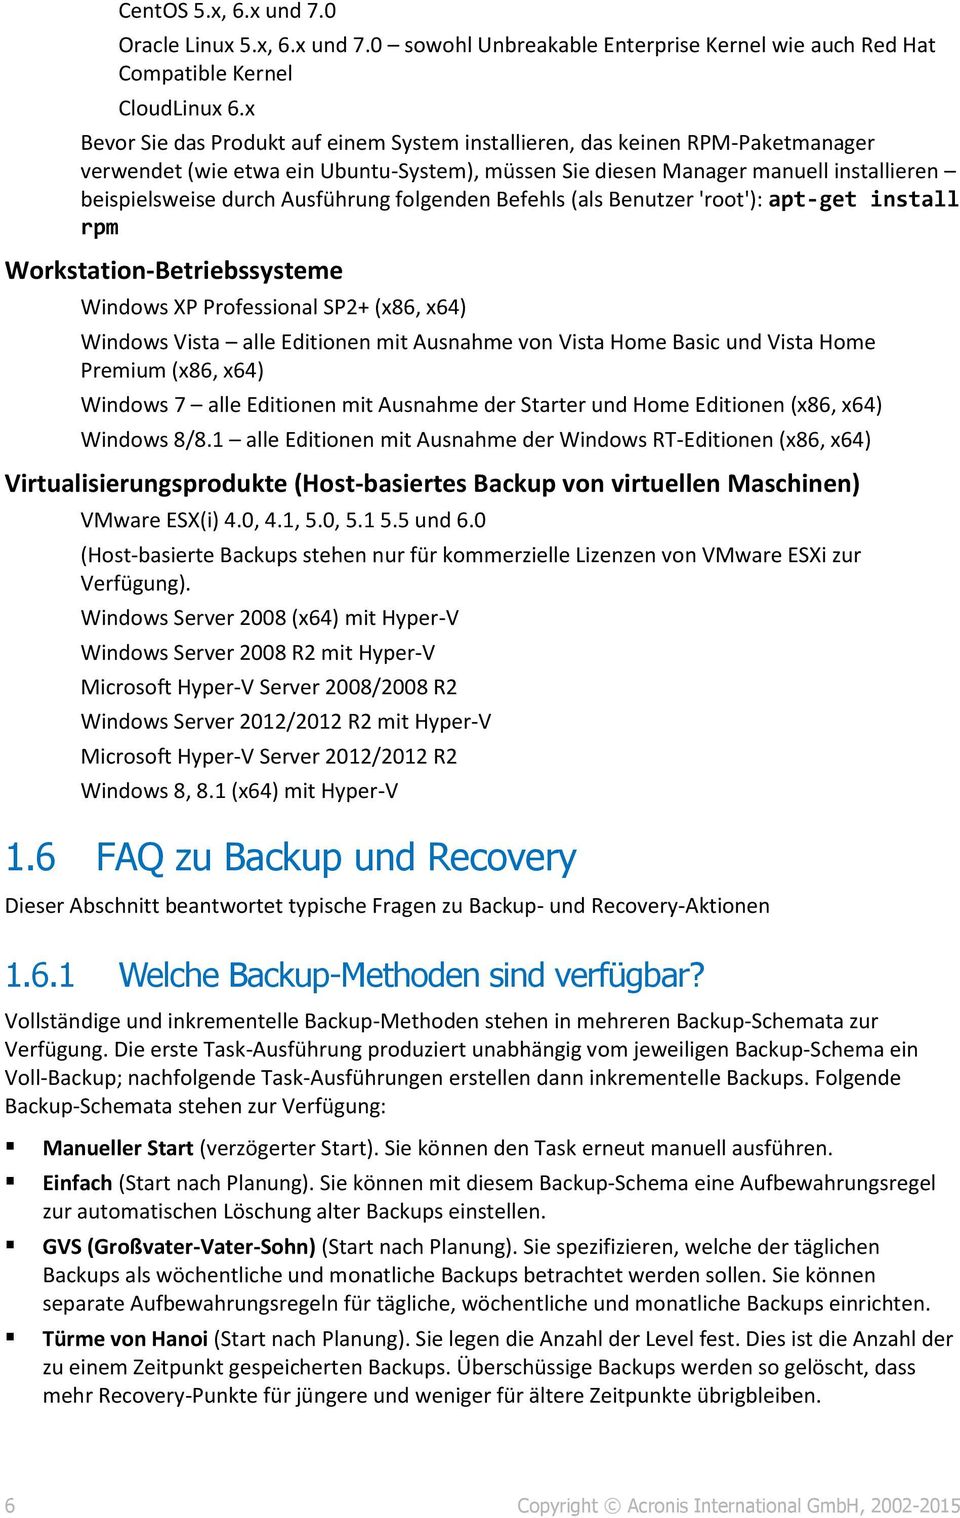 Ausführung folgenden Befehls (als Benutzer 'root'): apt-get install rpm Workstation-Betriebssysteme Windows XP Professional SP2+ (x86, x64) Windows Vista alle Editionen mit Ausnahme von Vista Home